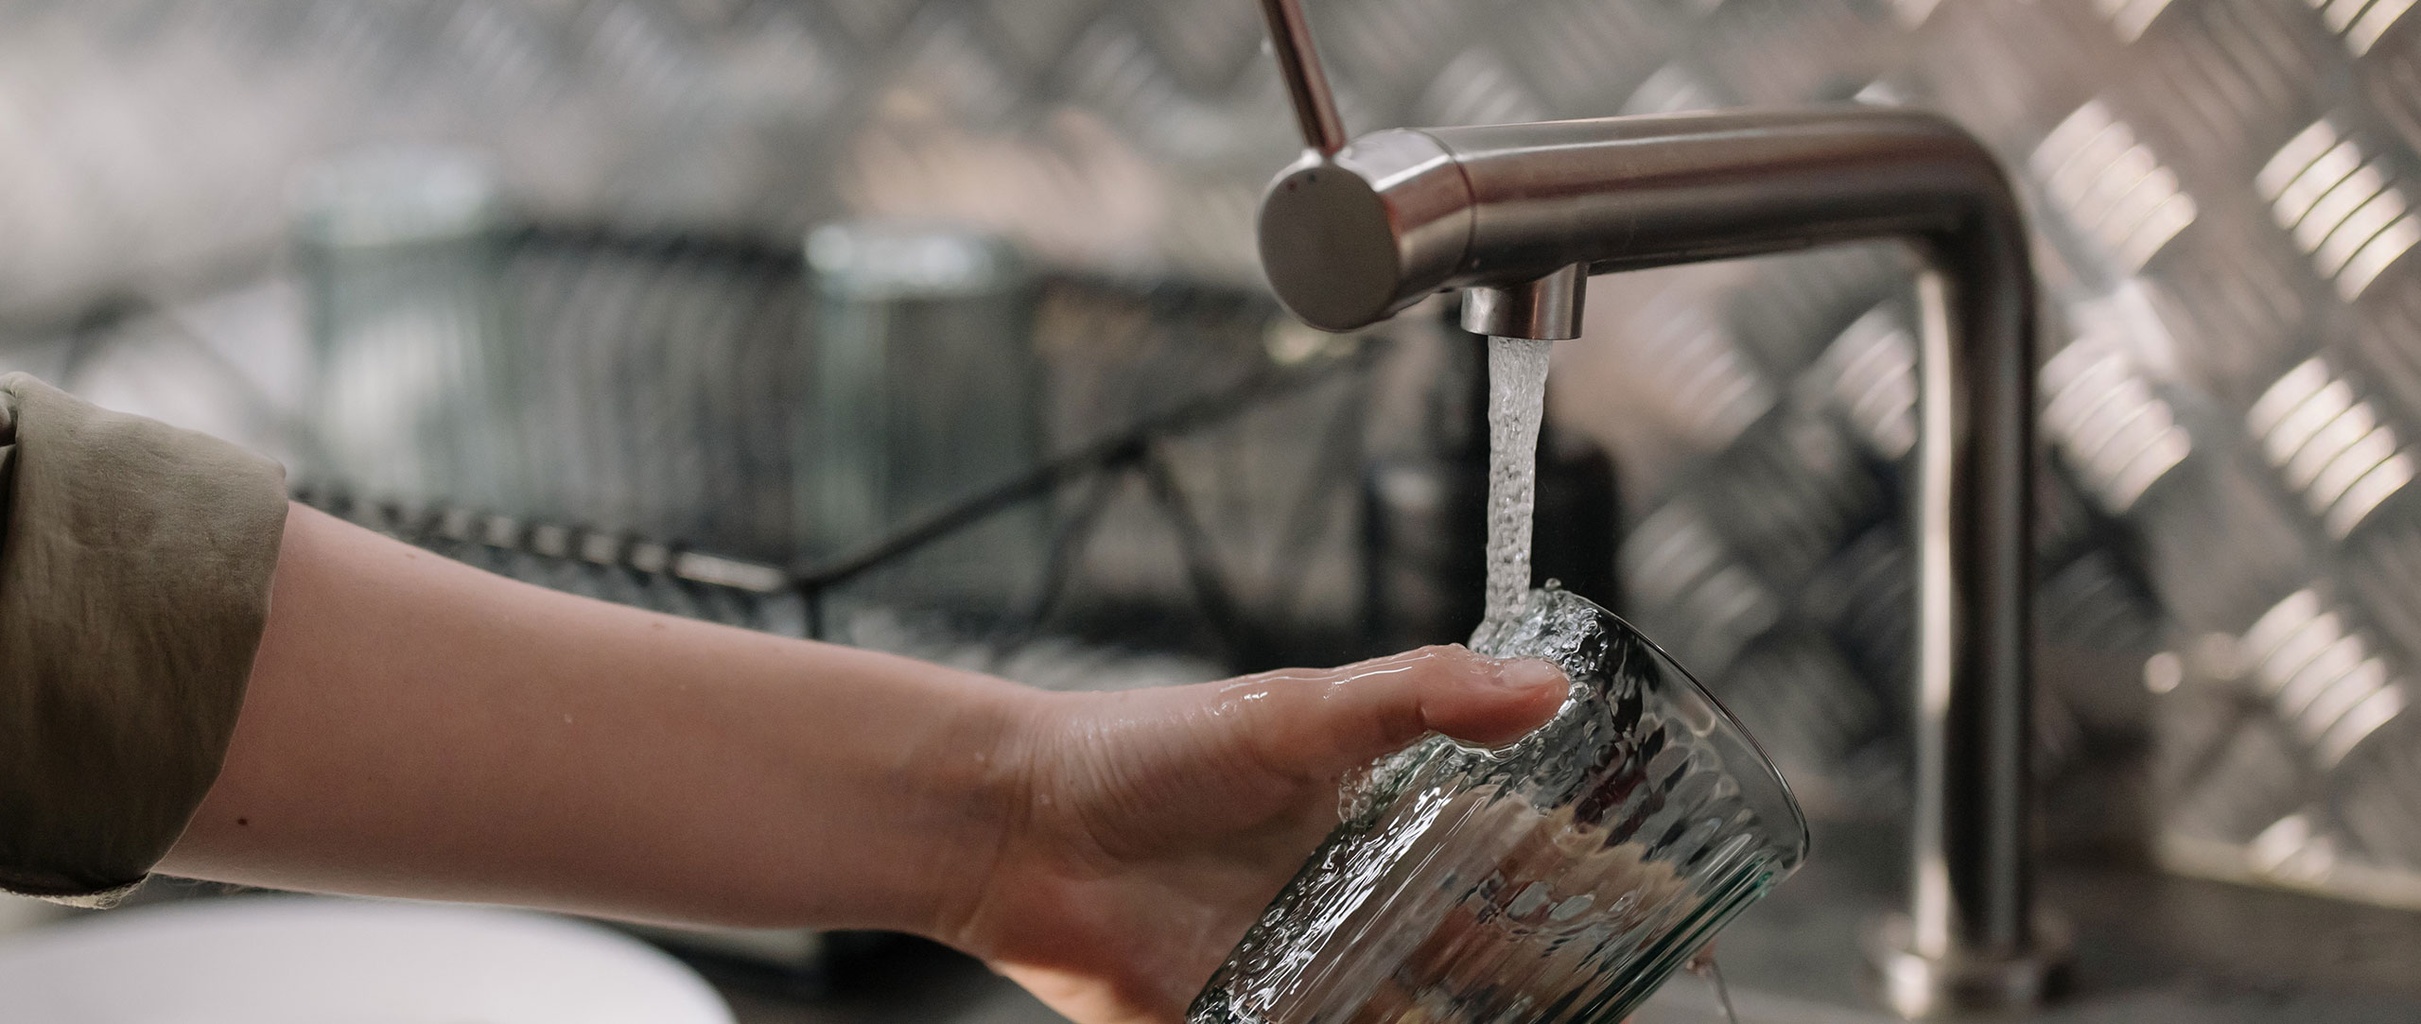 Le chauffe eau thermodynamique: prix fonctionnement et subvention